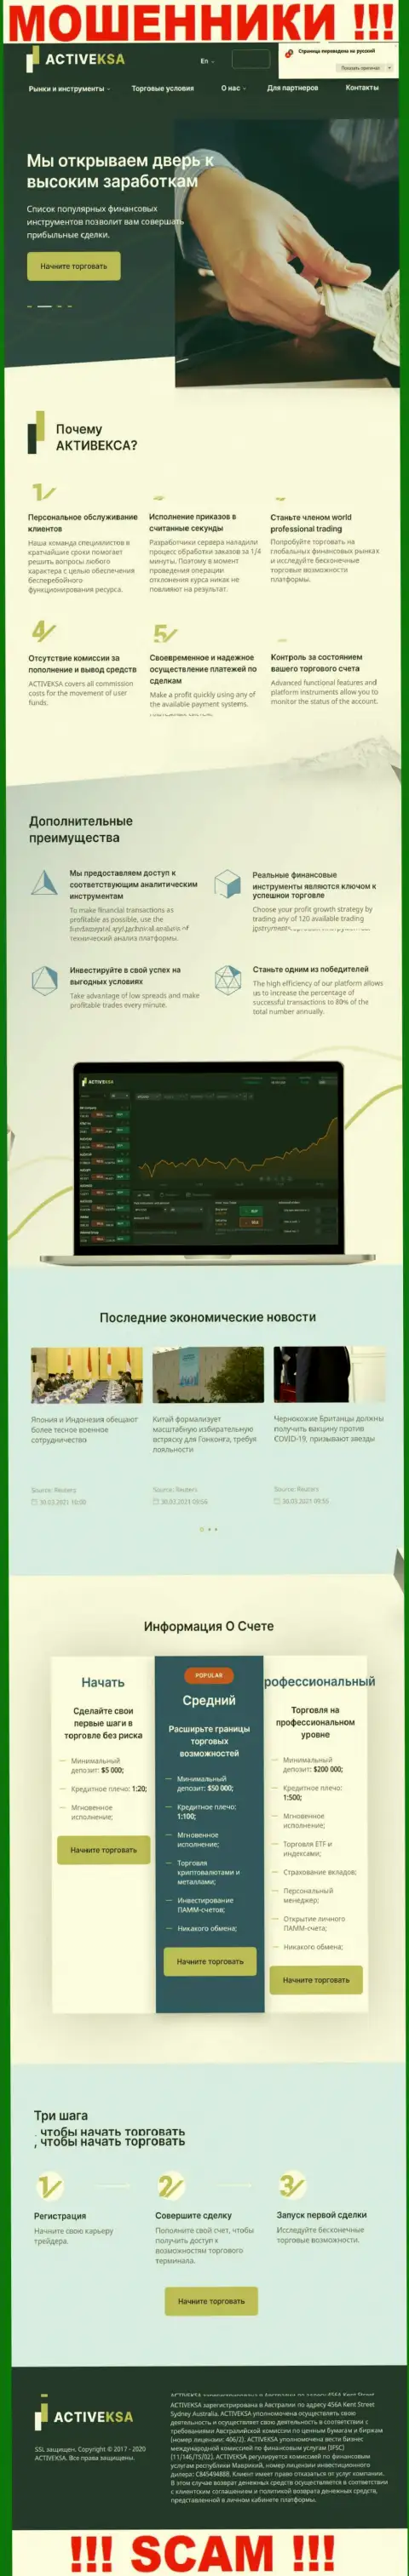 Activeksa Com - это официальный сайт интернет шулеров Активекса